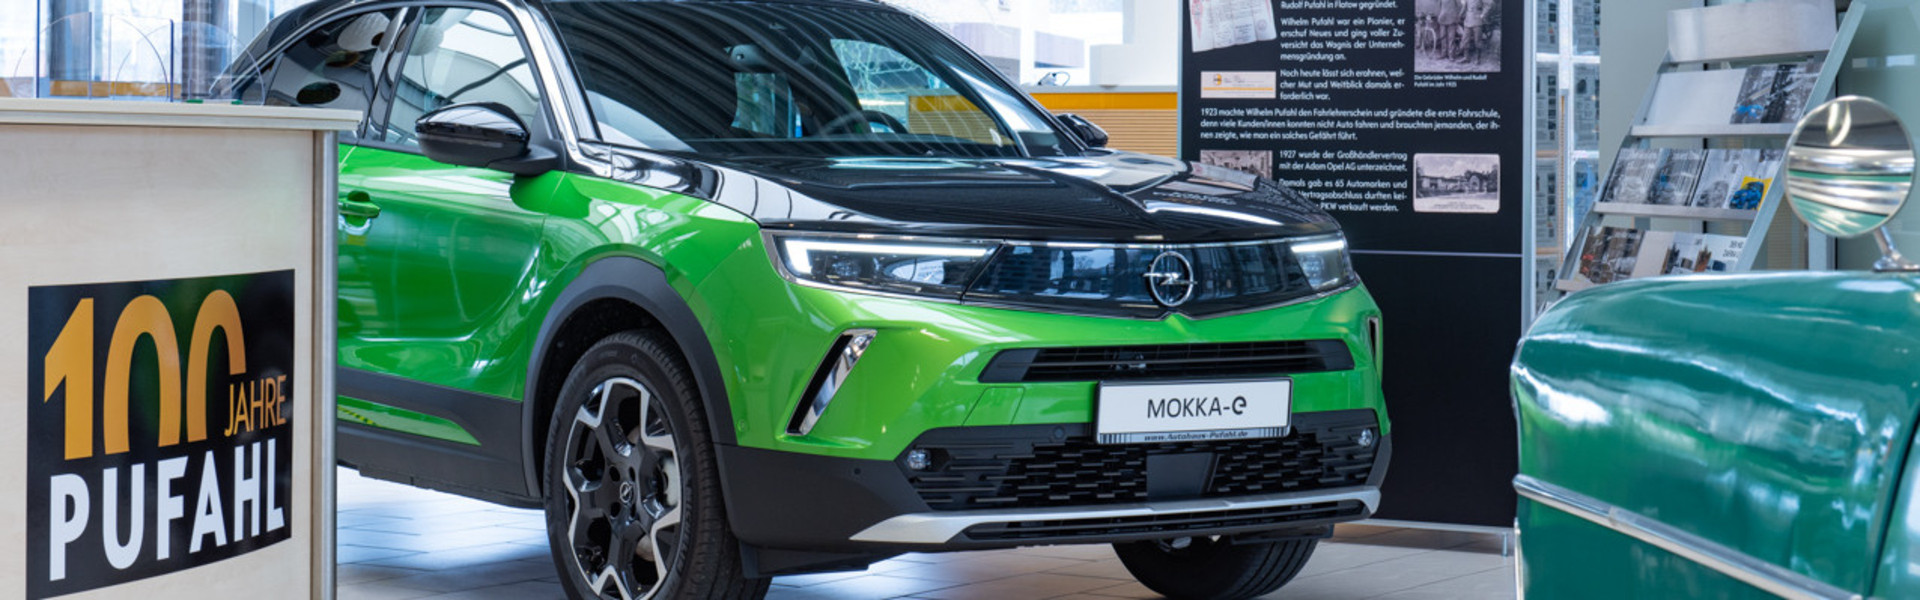 Opel Mokka elektrisch, Farbe: Grün und Schwarz